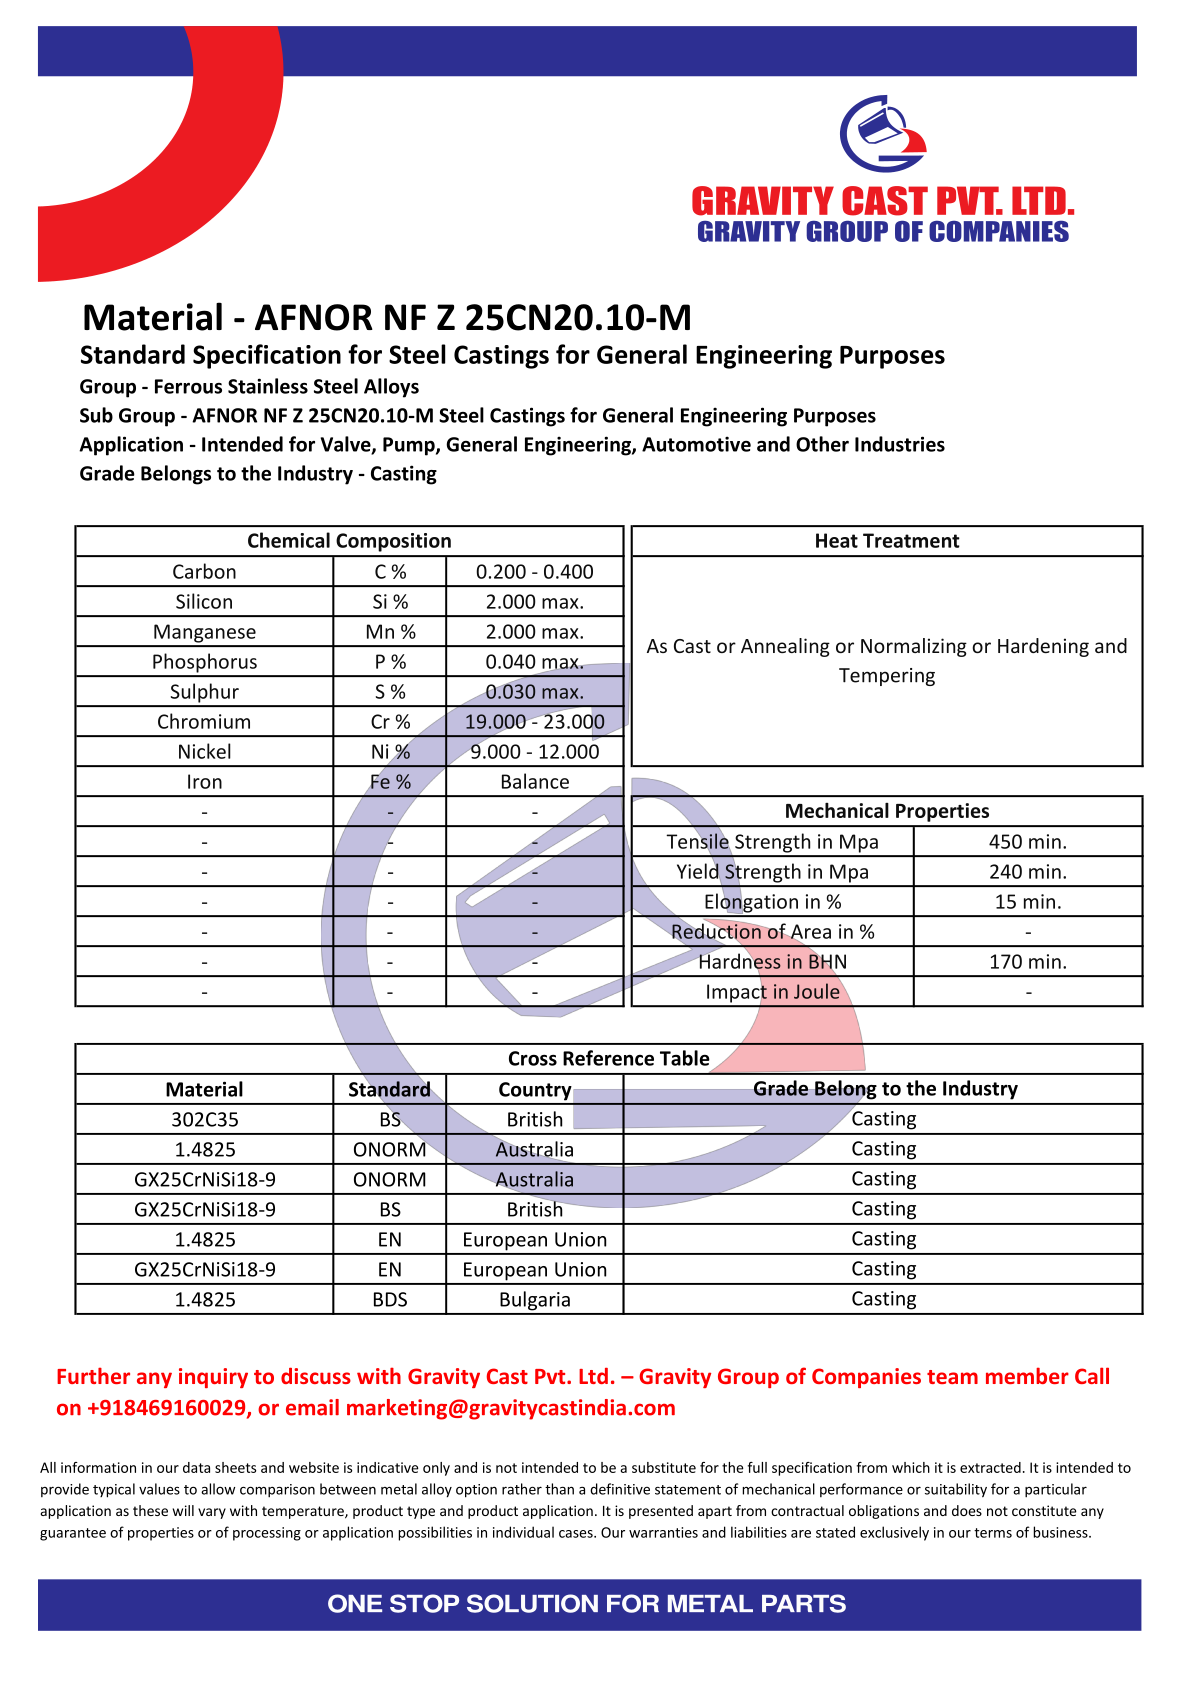 AFNOR NF Z 25CN20.10-M.pdf